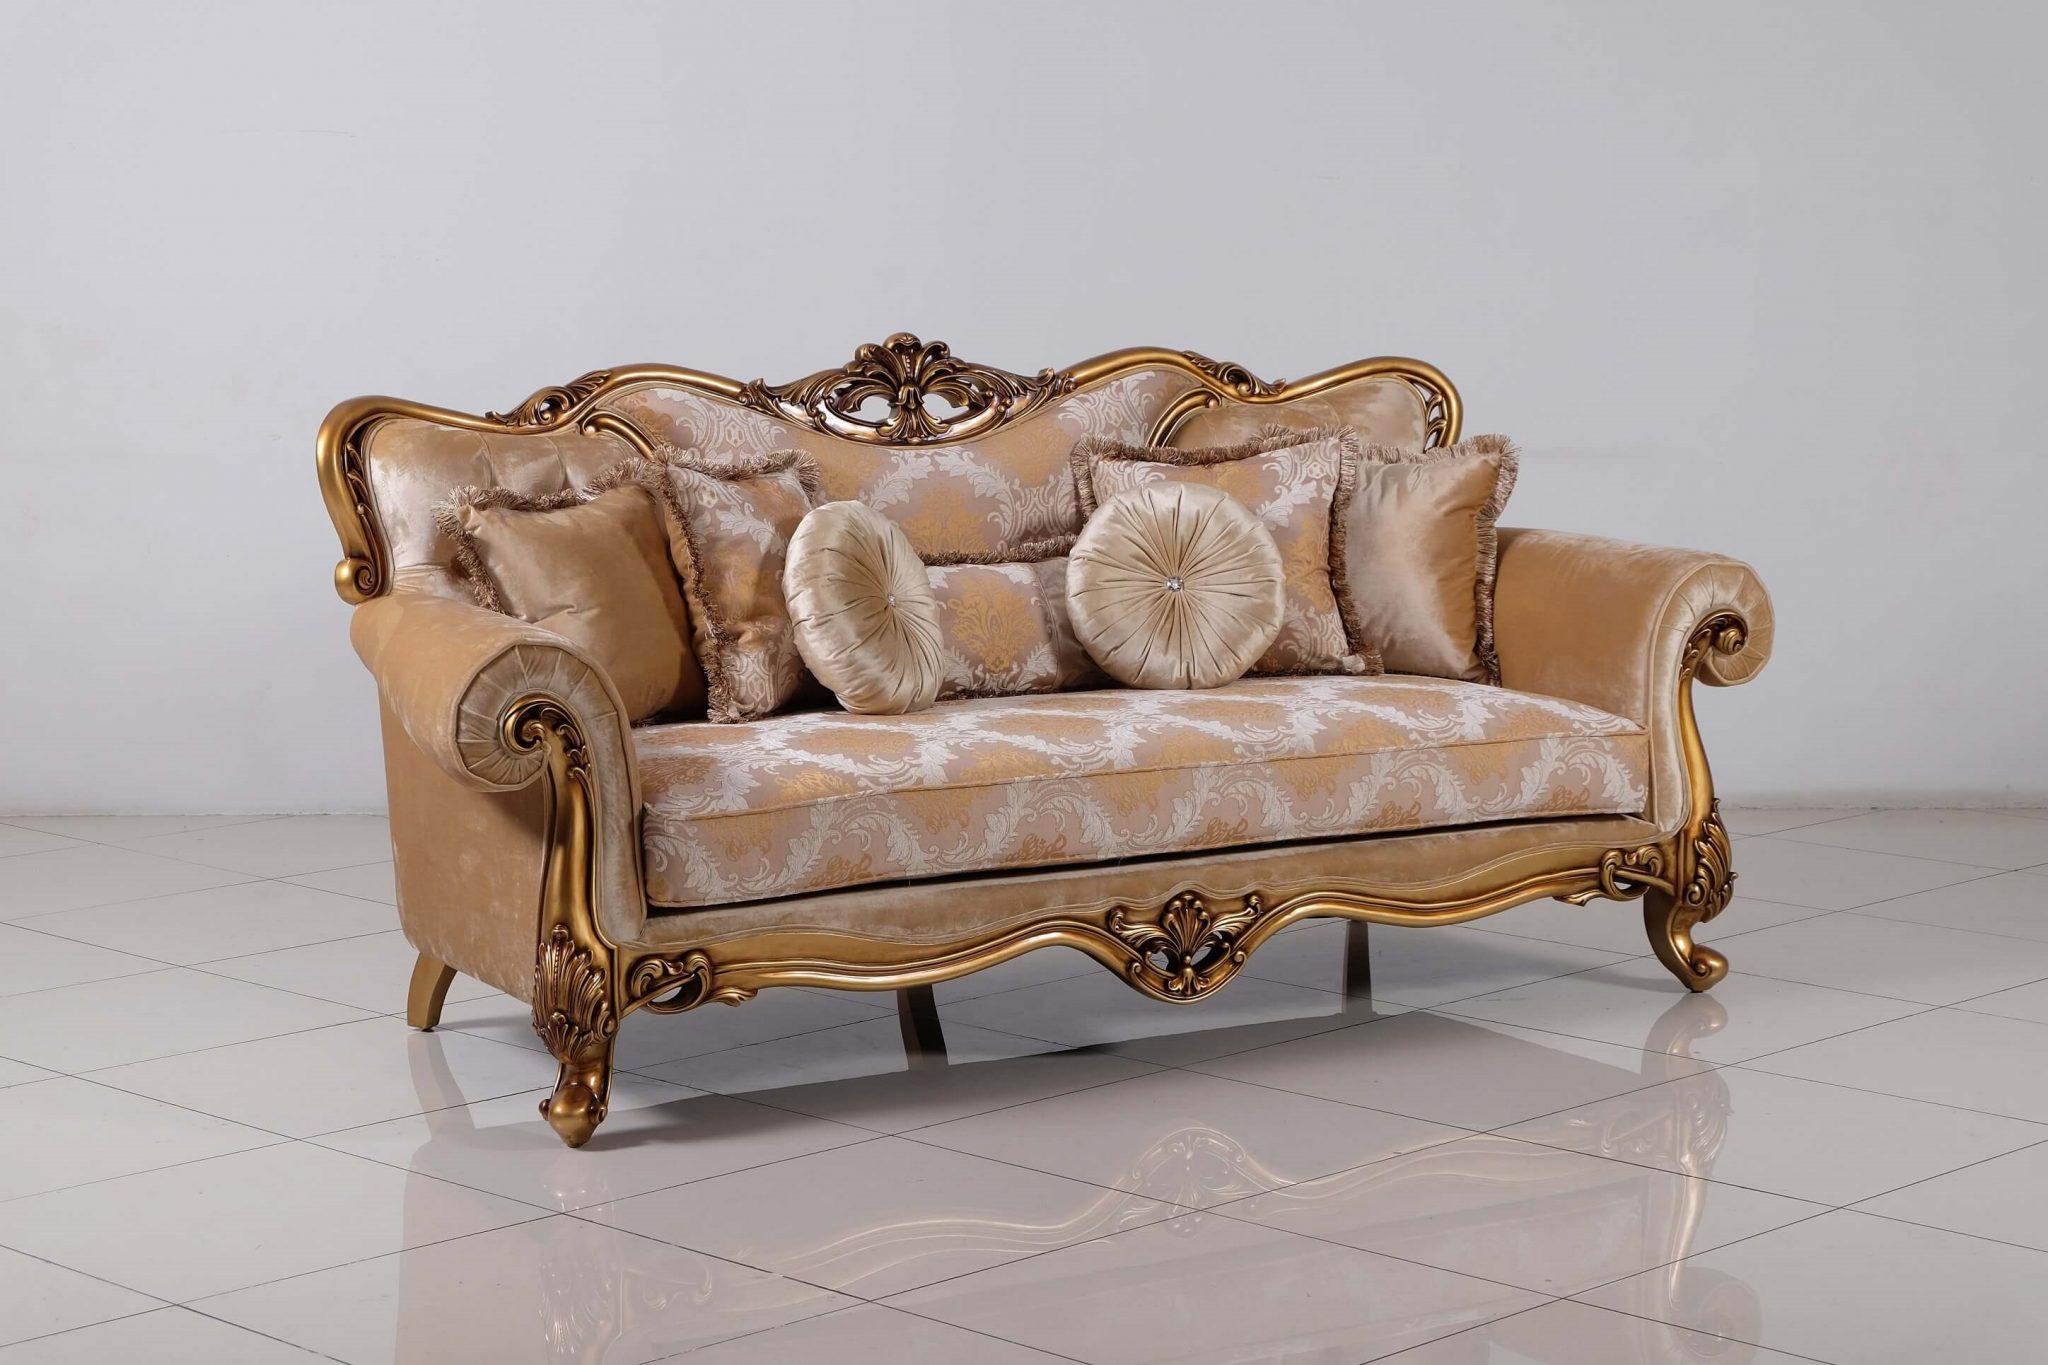 

        
EUROPEAN FURNITURE CLEOPATRA Sofa Set Gold/Bronze Fabric 663701289565
